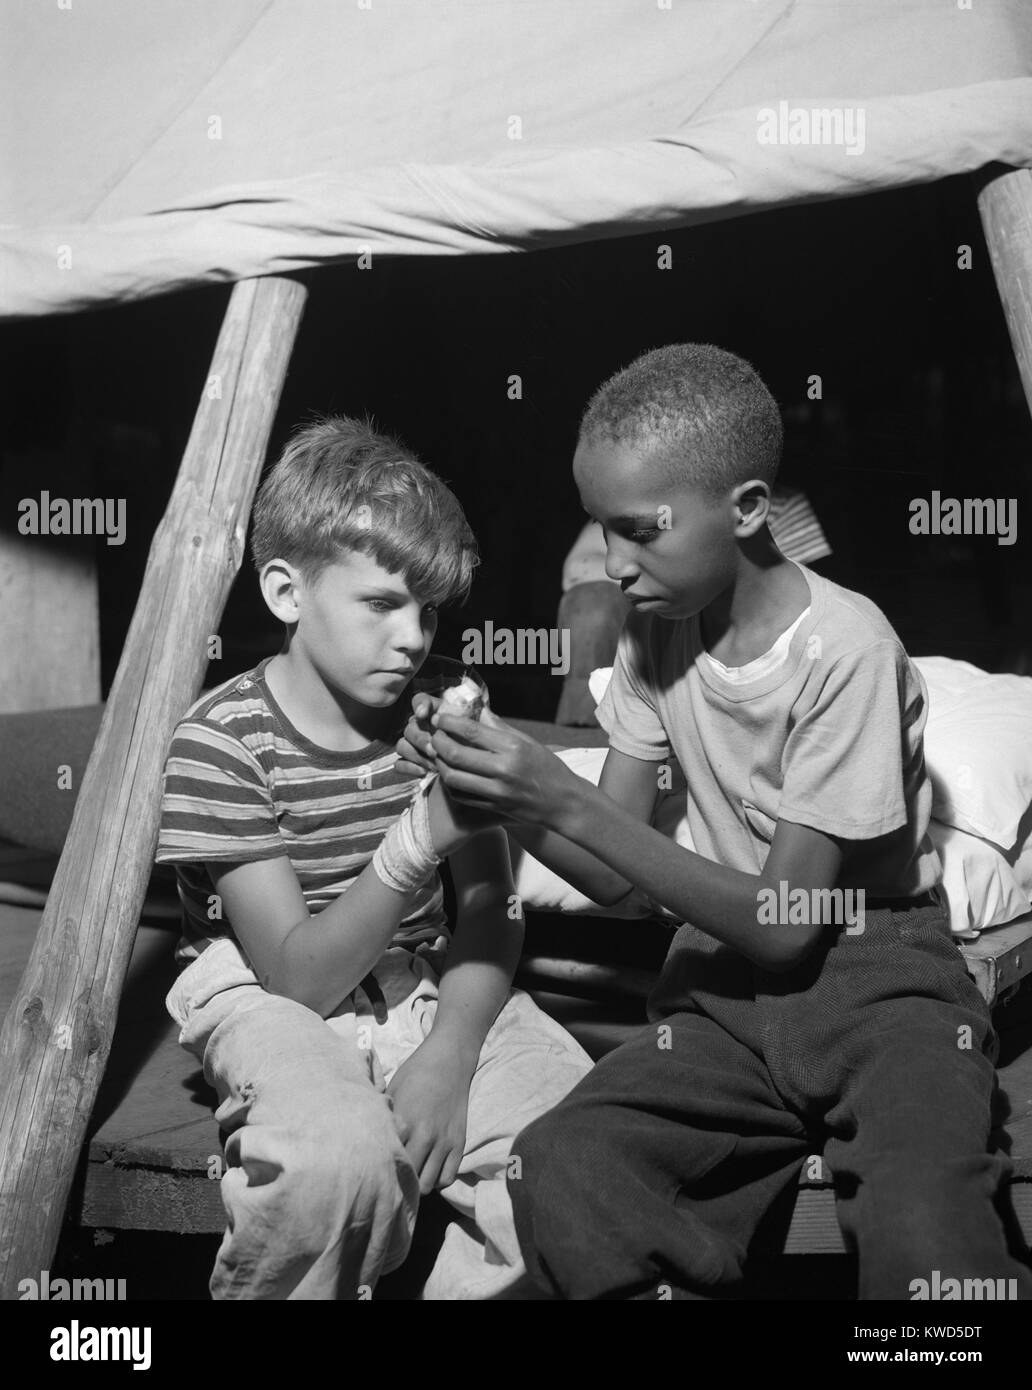 African American Camper hilft eine weiße Bubby mit seinen Bandagierten Hand. Sie sind am Lager Nathan Hale, Southfields, NY, die durch die Methodistische Camp Service im August 1943 Foto von Gordon Parks unterstützt wurde. (BSLOC 2014 13 102) Stockfoto